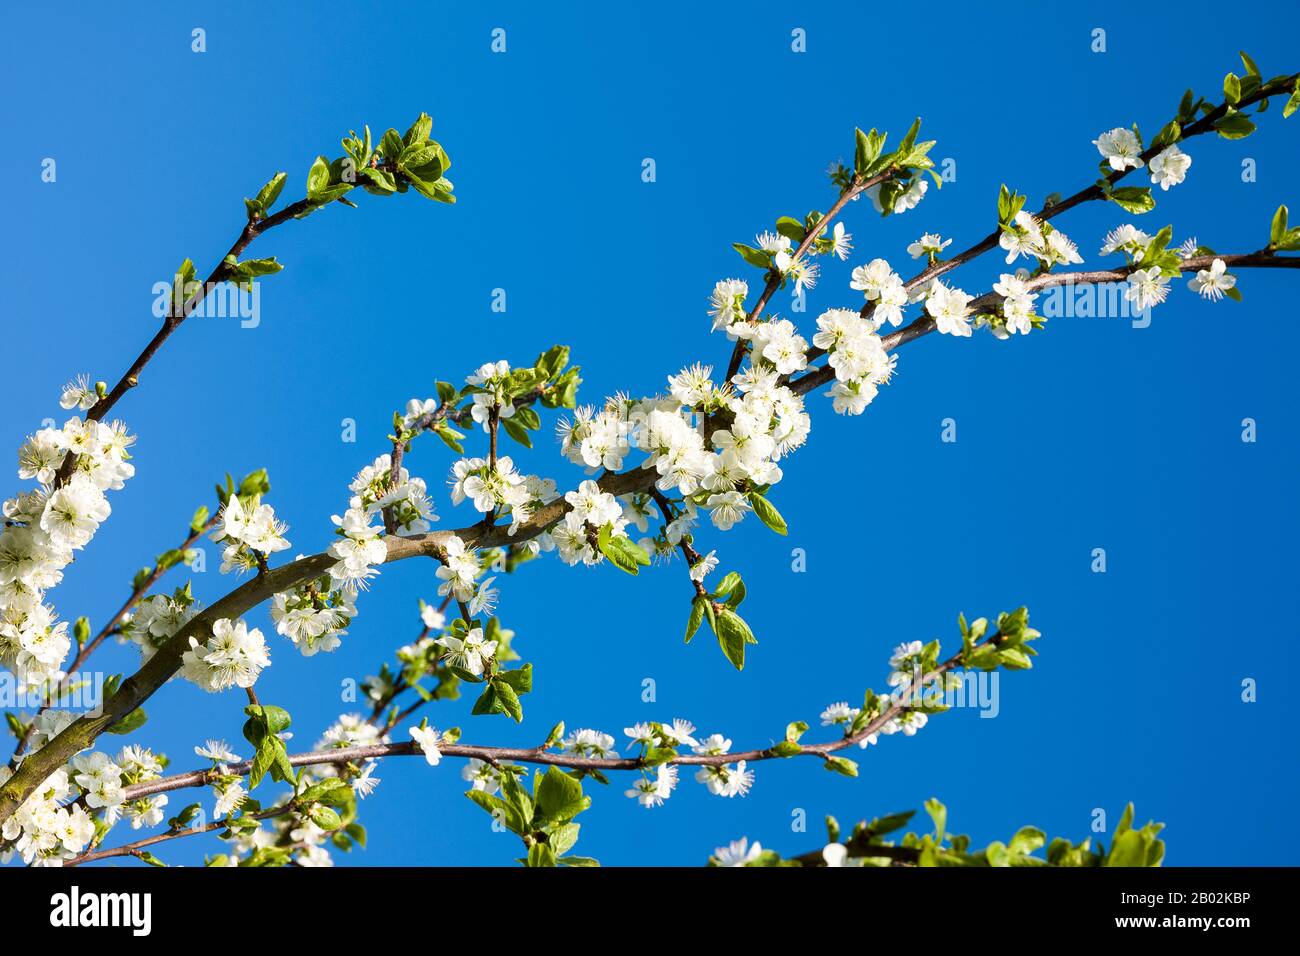 Weiße Blüte auf einem verdammten Sämling, der in einem englischen Garten Großbritannien gegen einen klaren blauen Himmel zeigt Stockfoto